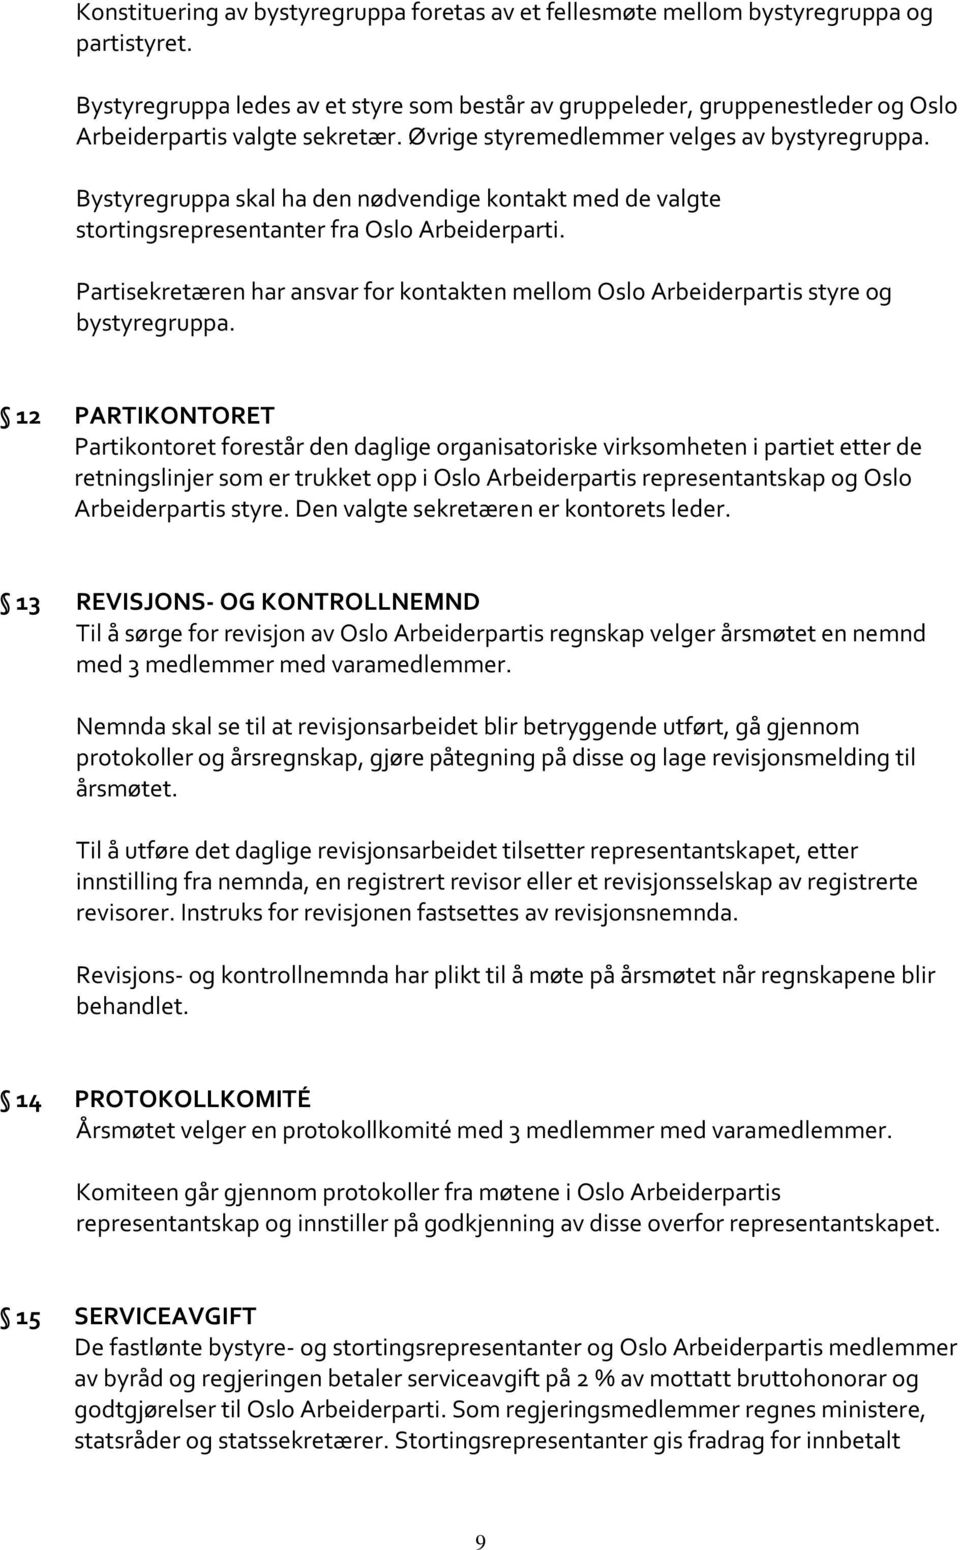 Bystyregruppa skal ha den nødvendige kontakt med de valgte stortingsrepresentanter fra Oslo Arbeiderparti. Partisekretæren har ansvar for kontakten mellom Oslo Arbeiderpartis styre og bystyregruppa.